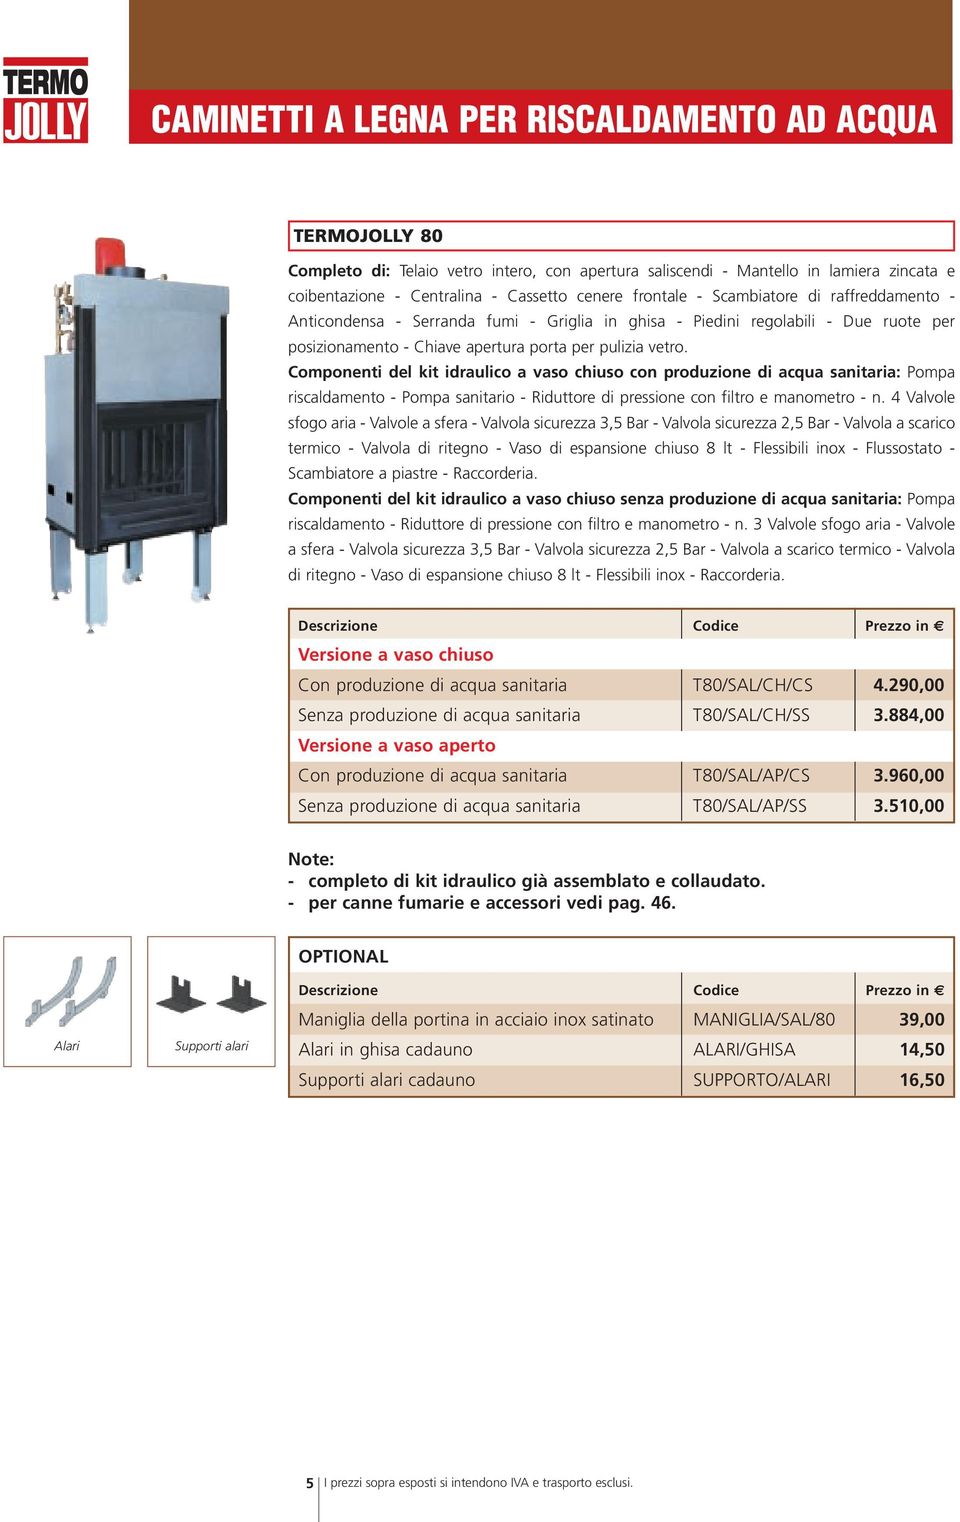 Componenti del kit idraulico a vaso chiuso con produzione di acqua sanitaria: Pompa riscaldamento - Pompa sanitario - Riduttore di pressione con filtro e manometro - n.